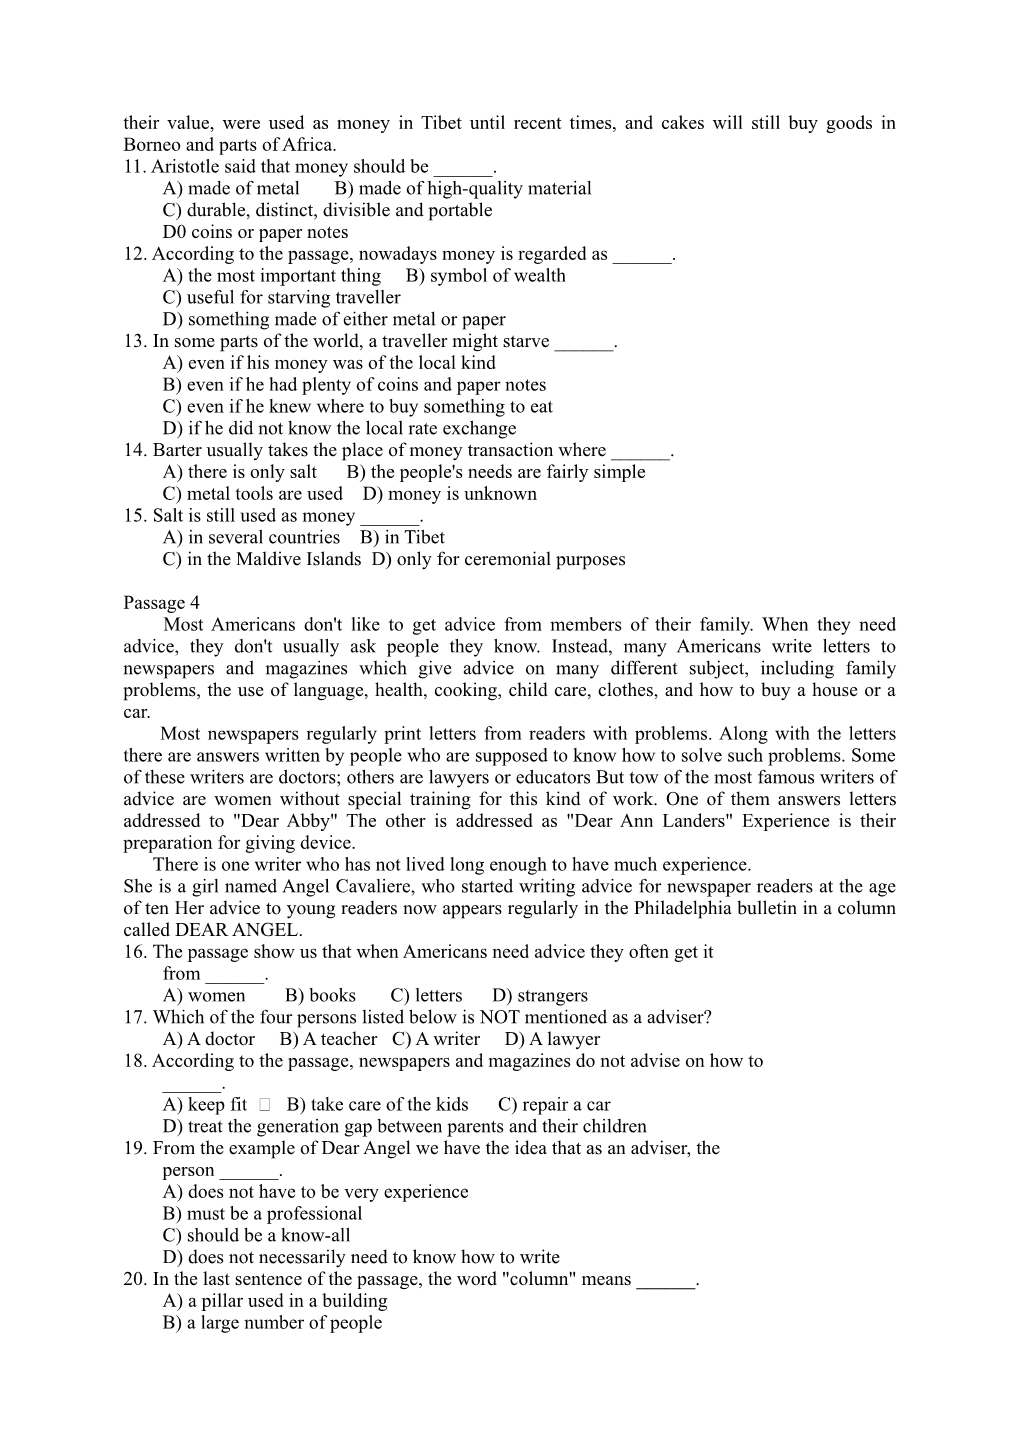 Examination Paper 2